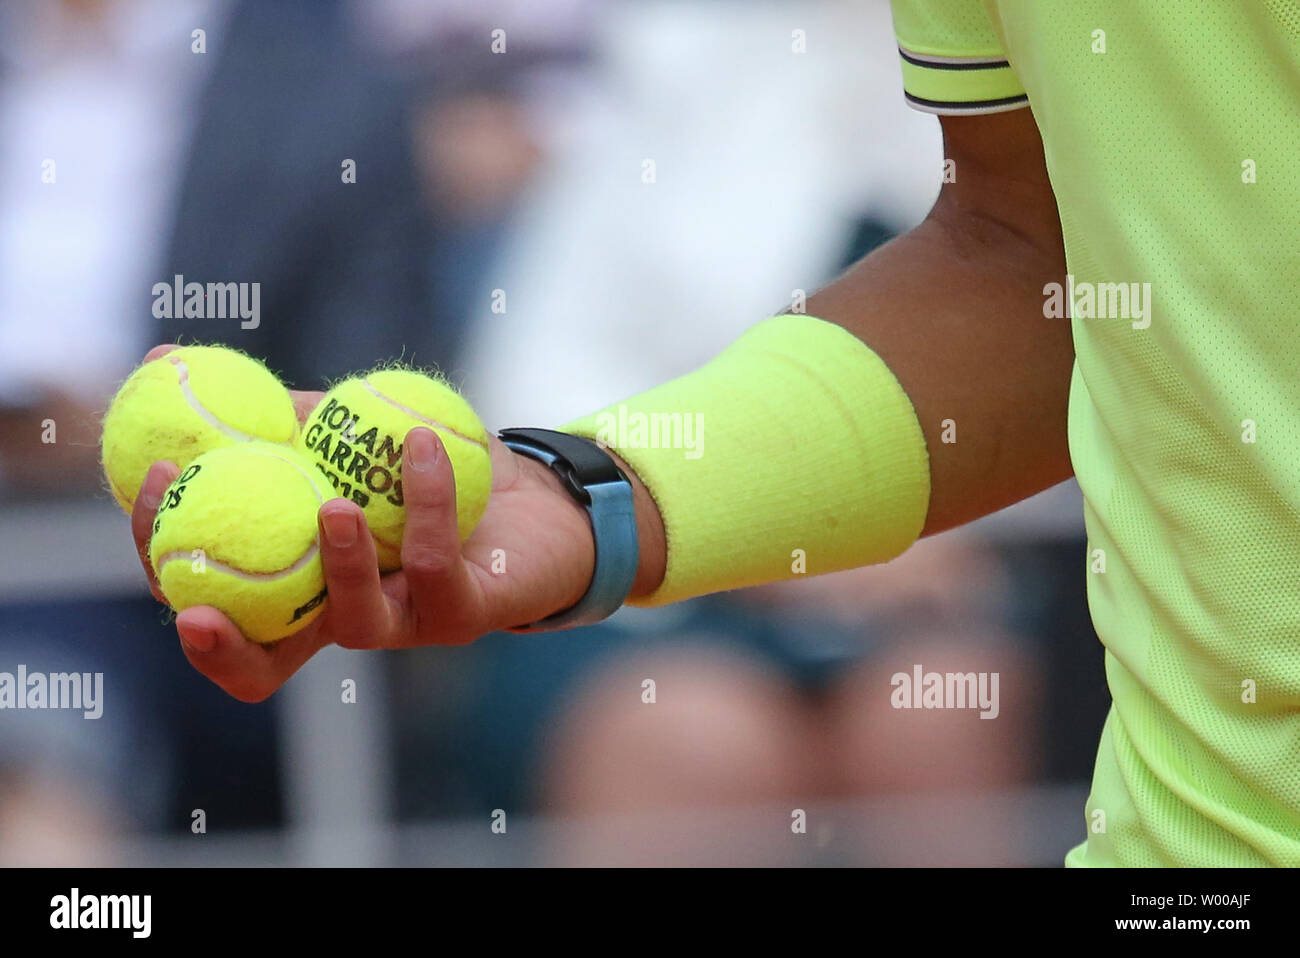 Rafael Nadal Espagne est de 3 balles de tennis avant de servir au cours de son Open de France demi-finales match contre Roger Federer de Suisse à Roland Garros à Paris le 7 juin 2019. Nadal bat Federer 6-3, 6-4, 6-2) pour passer à la finale. Photo de David Silpa/UPI Banque D'Images